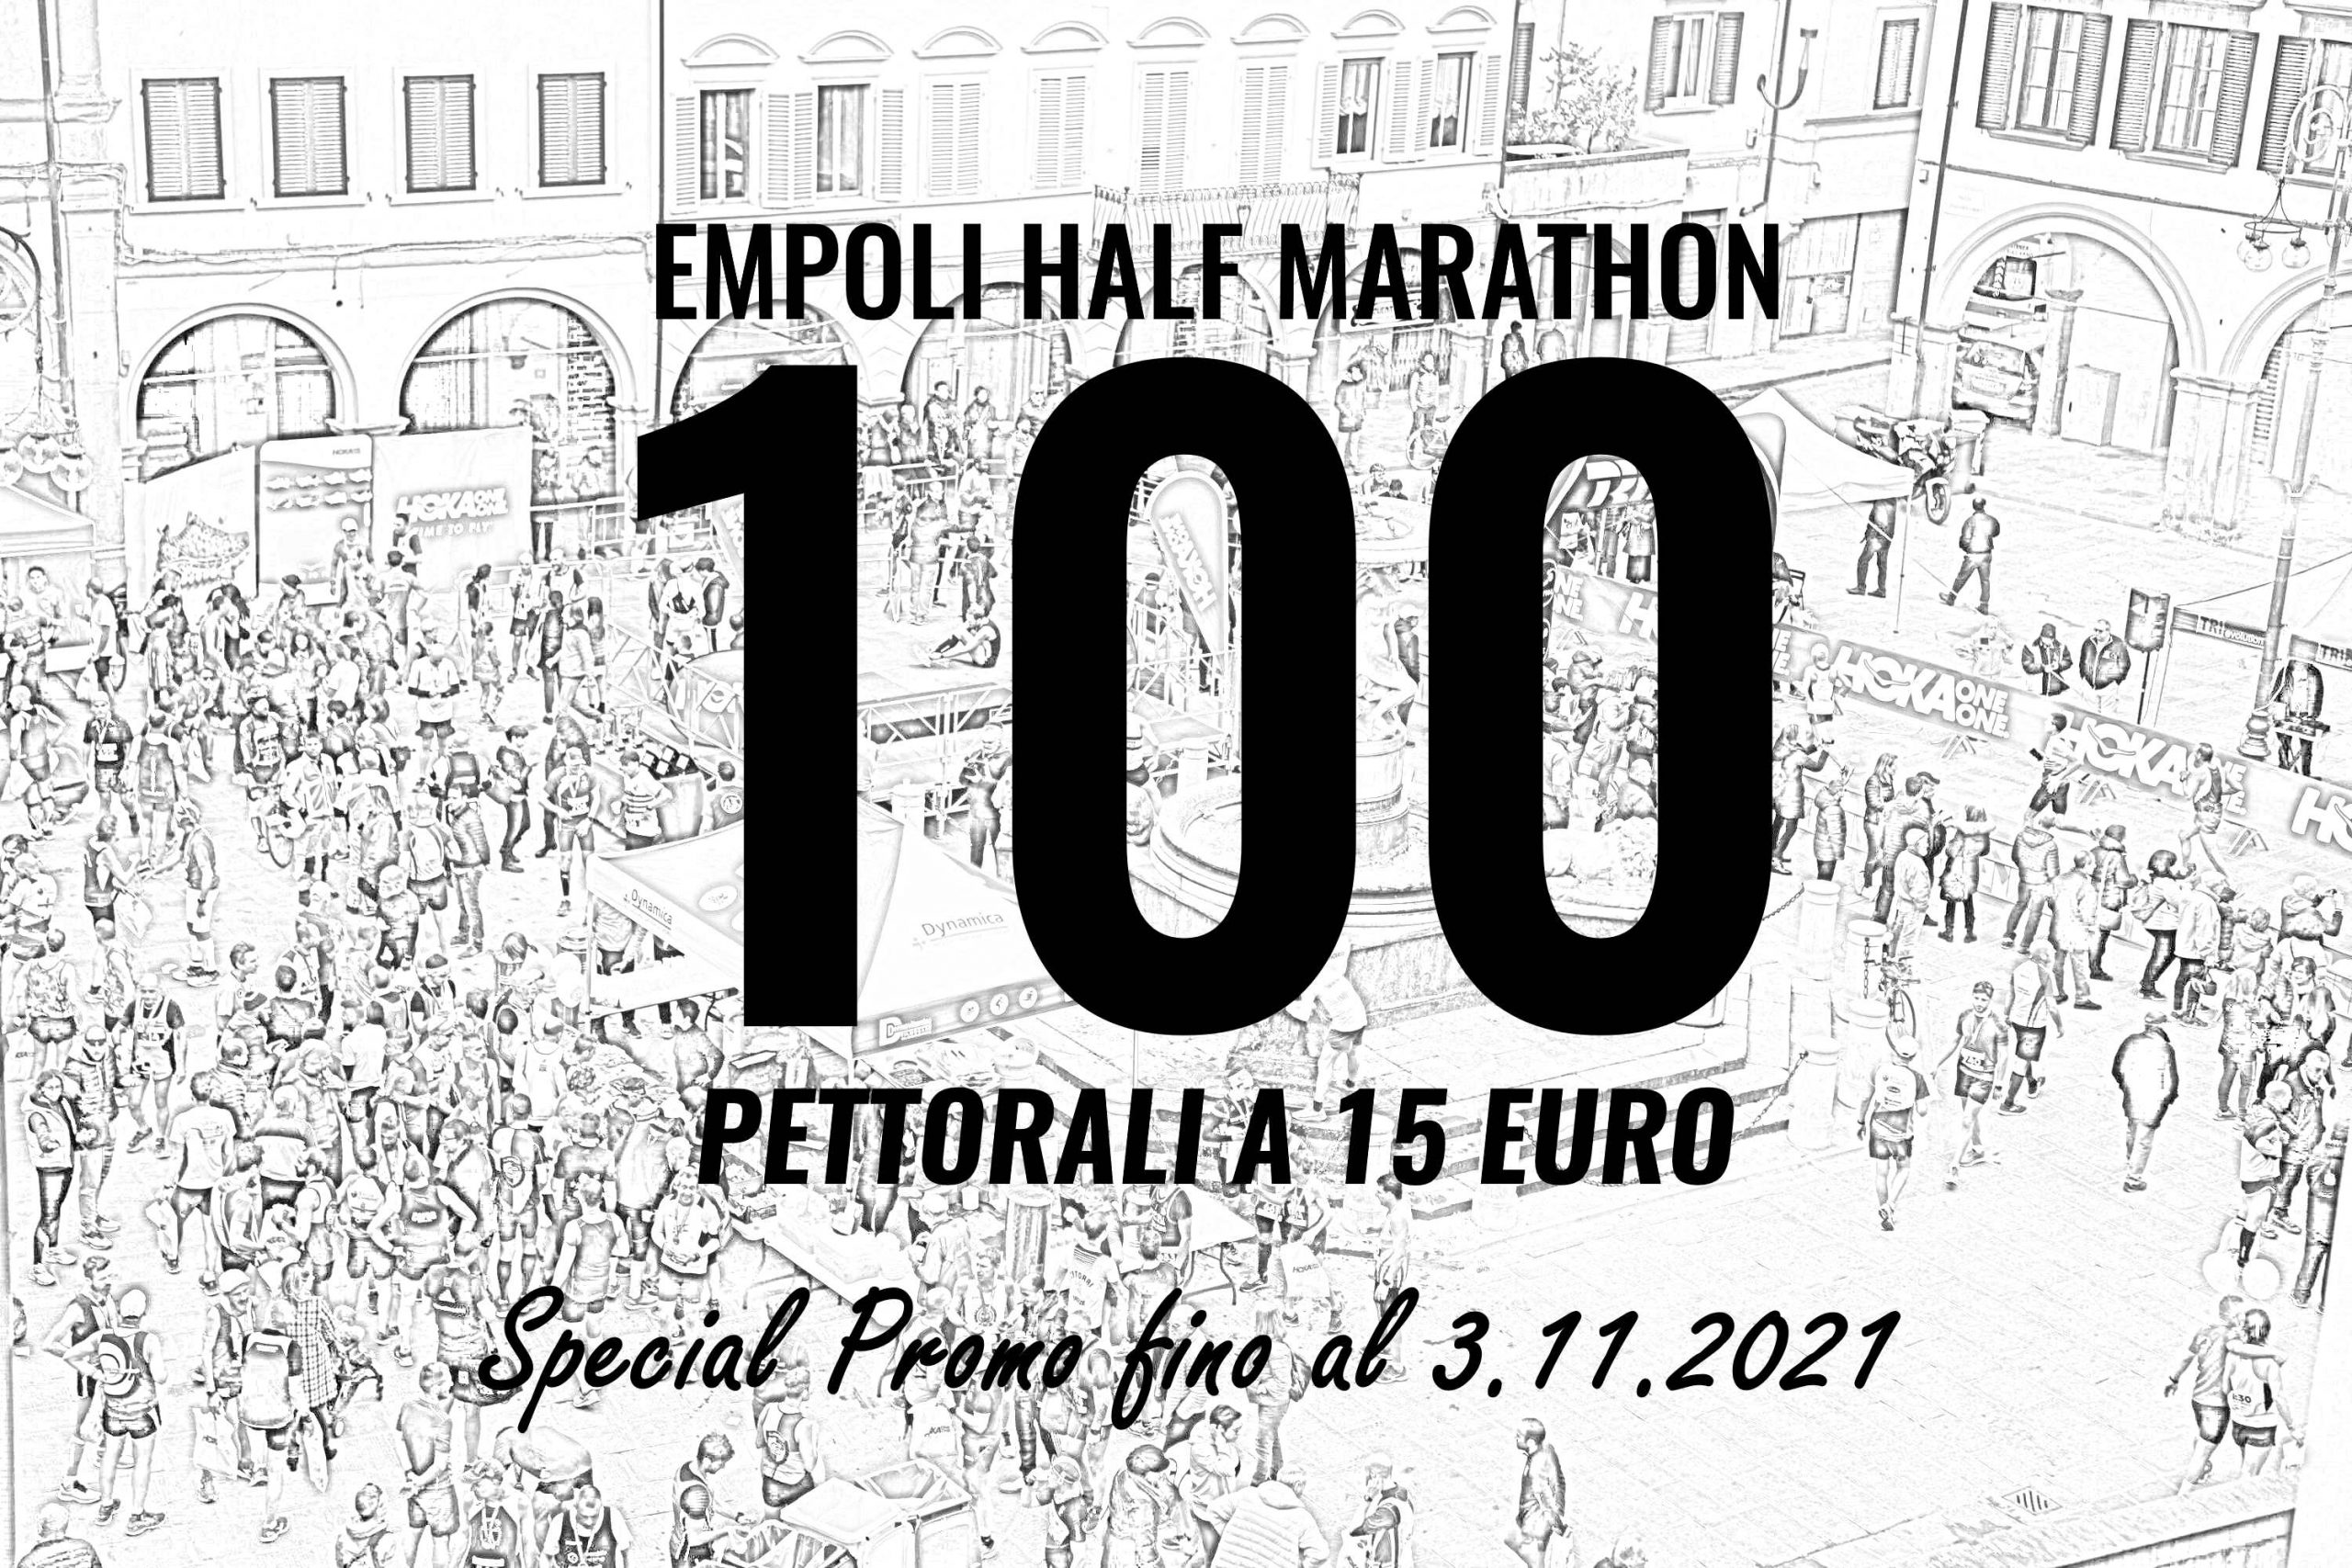 Special Promo per 100 pettorali a 15 euro, fino al 3 novembre!